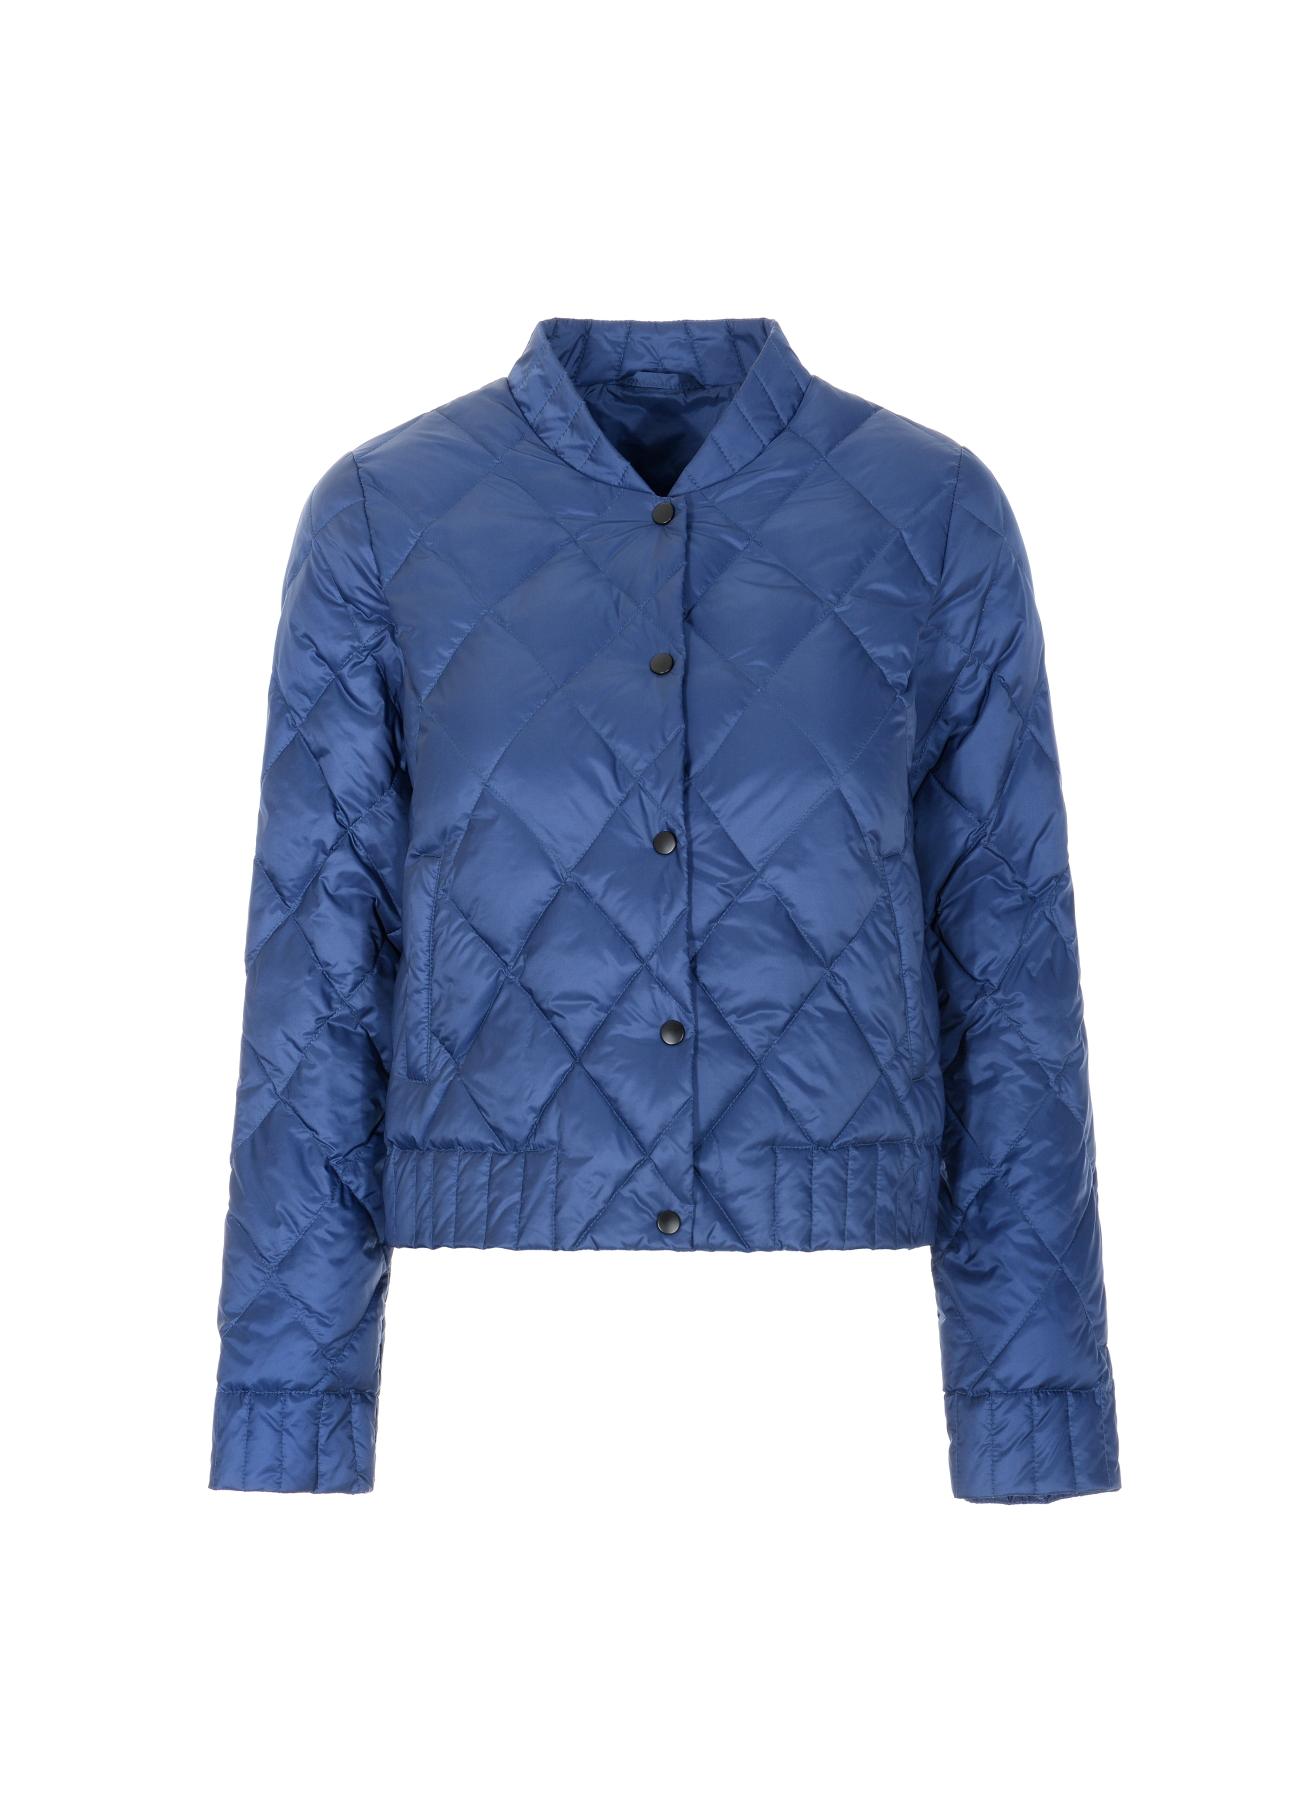 Niebieska pikowana kurtka damska KURDT-0290-69(W21)